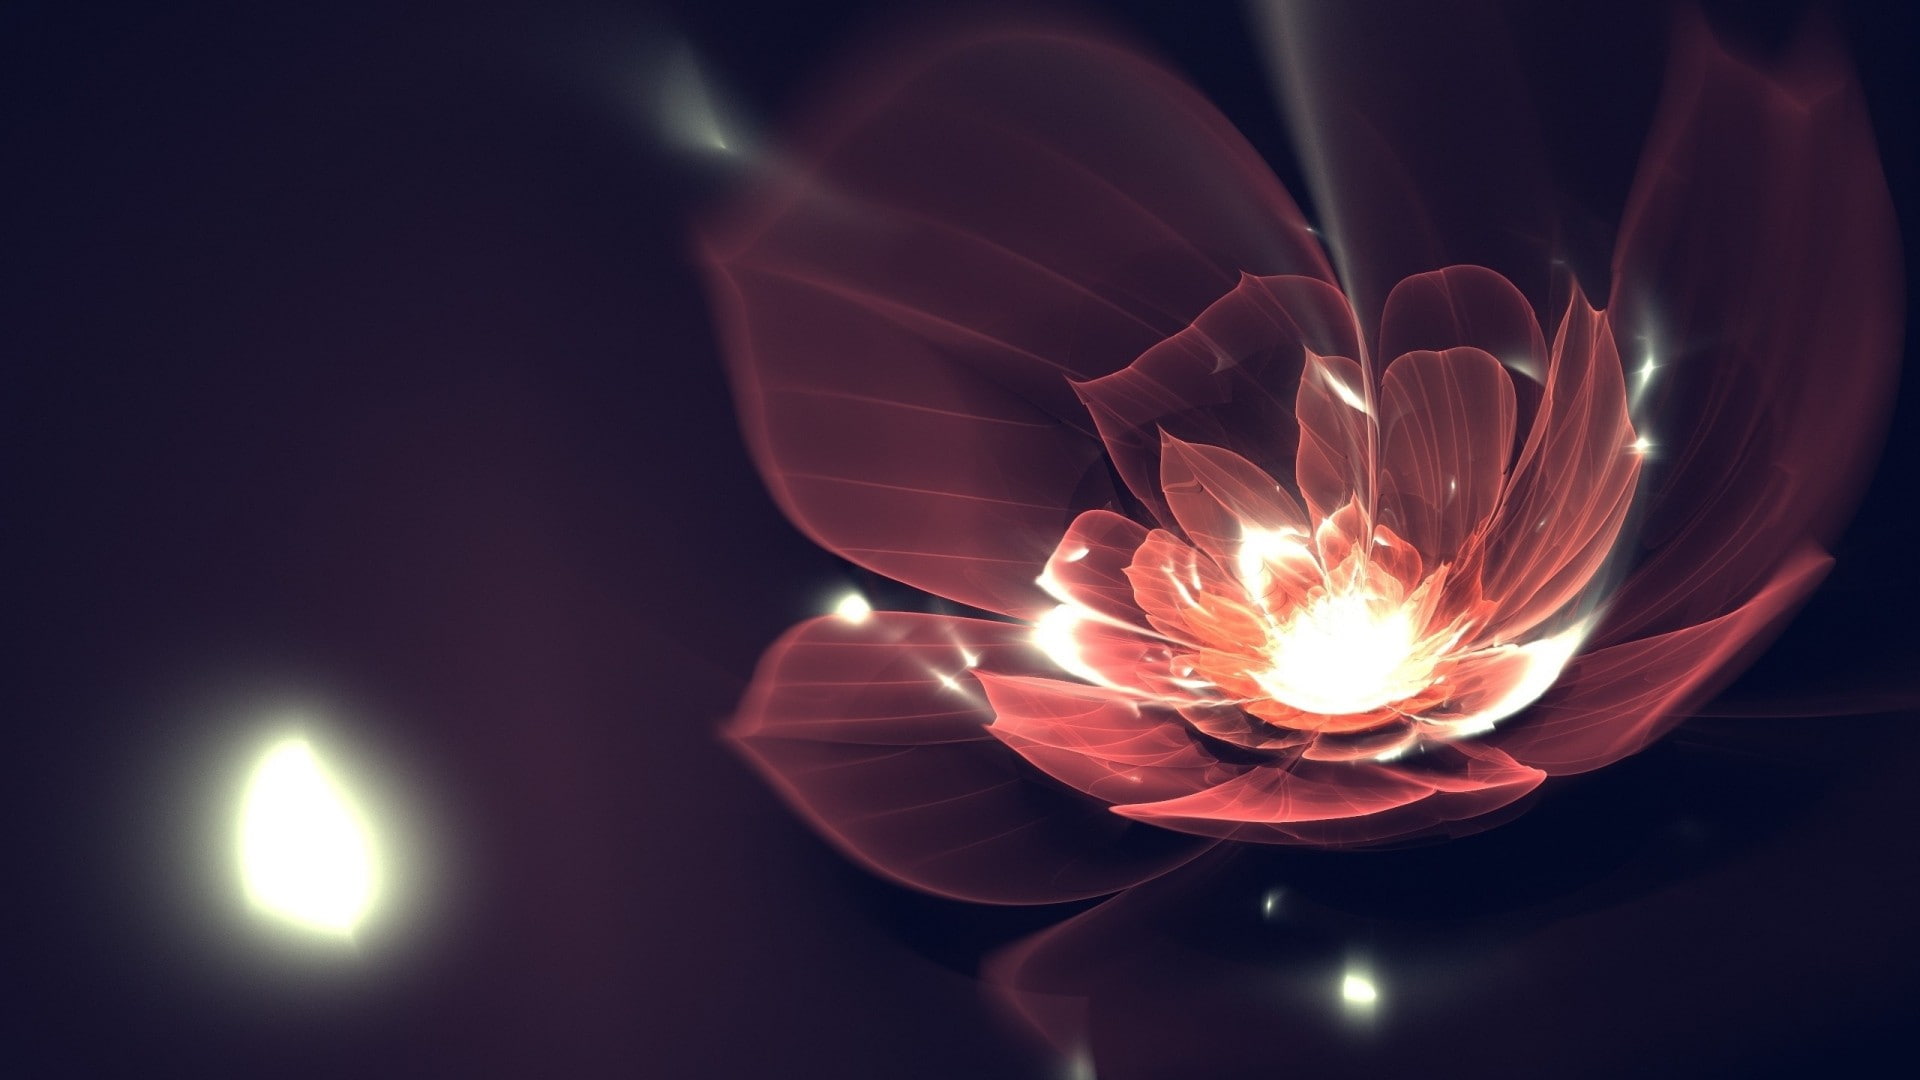 fractal, fractal flowers, digital art, illuminated, lighting equipment